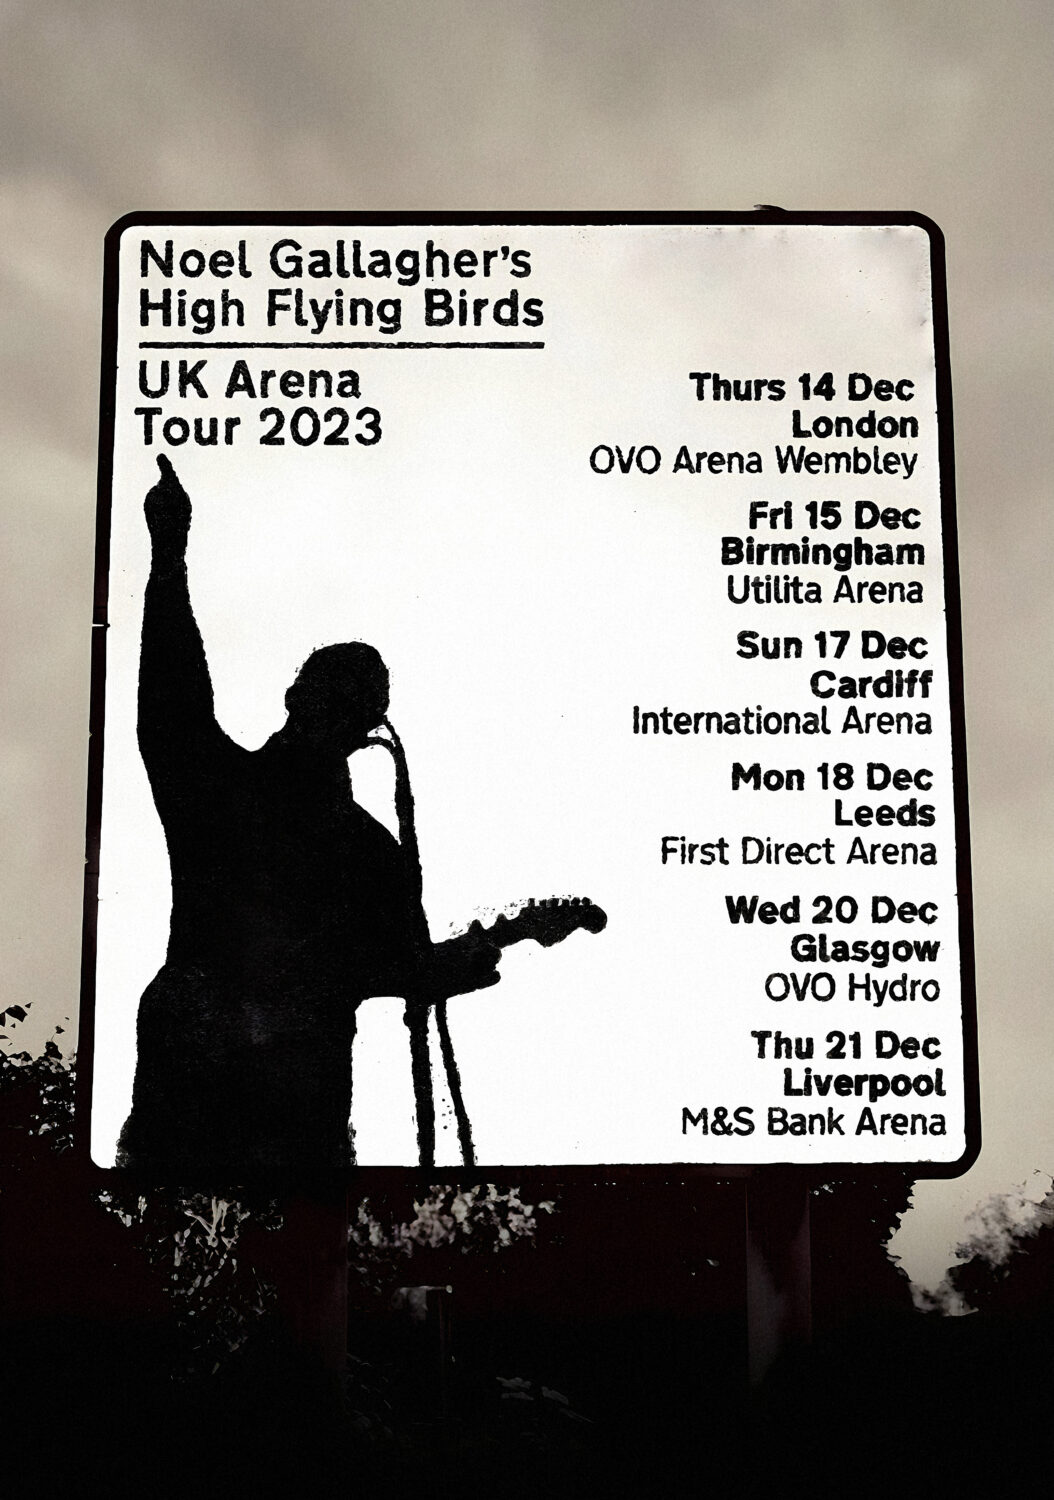 noel gallagher tour merch 2023